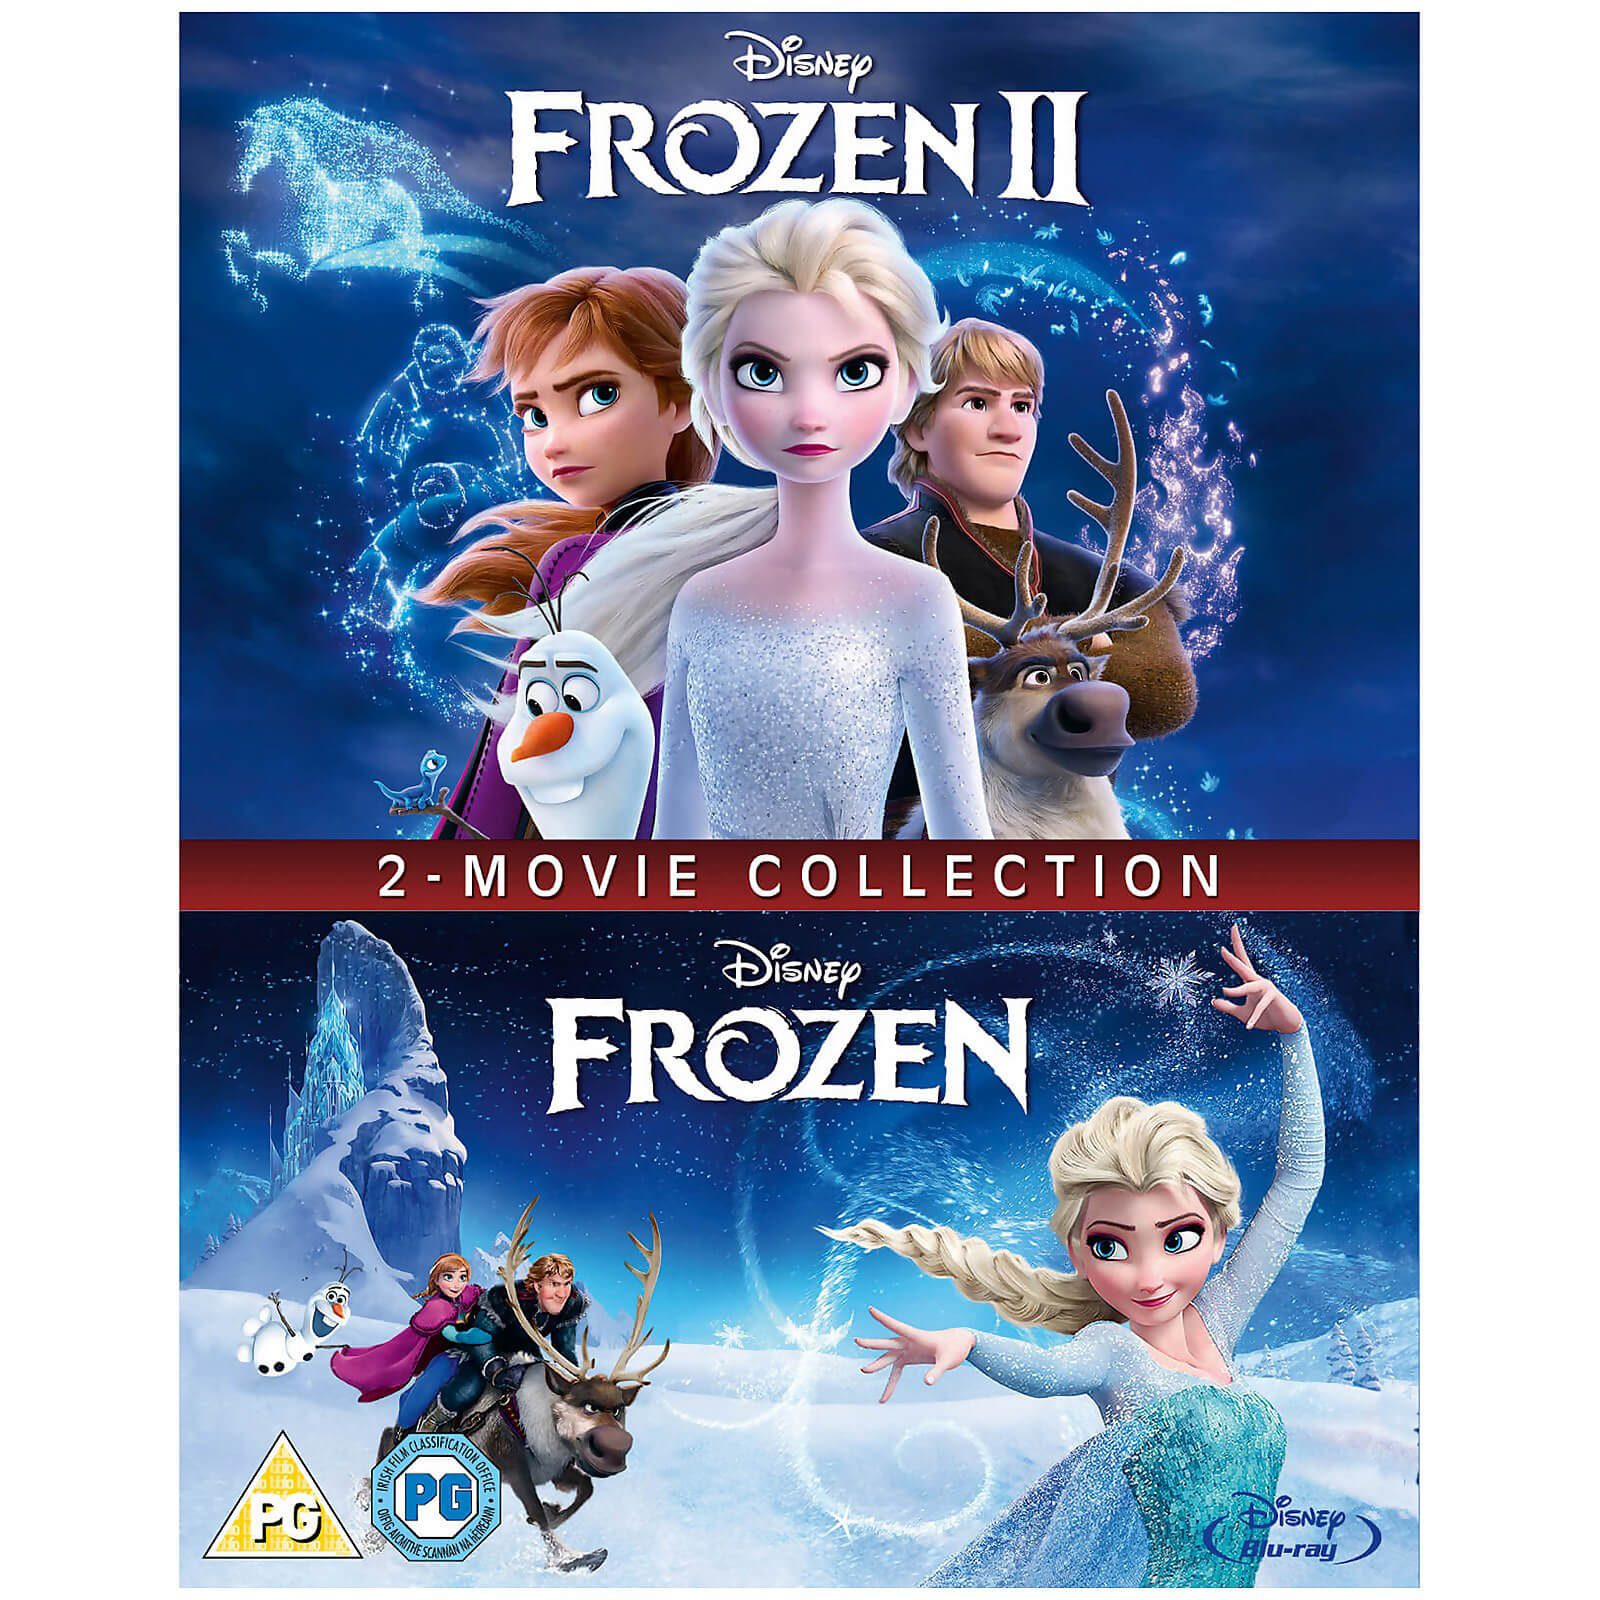 Die Eiskönigin & Die Eiskönigin 2 im Doppelpack von Walt Disney Studios